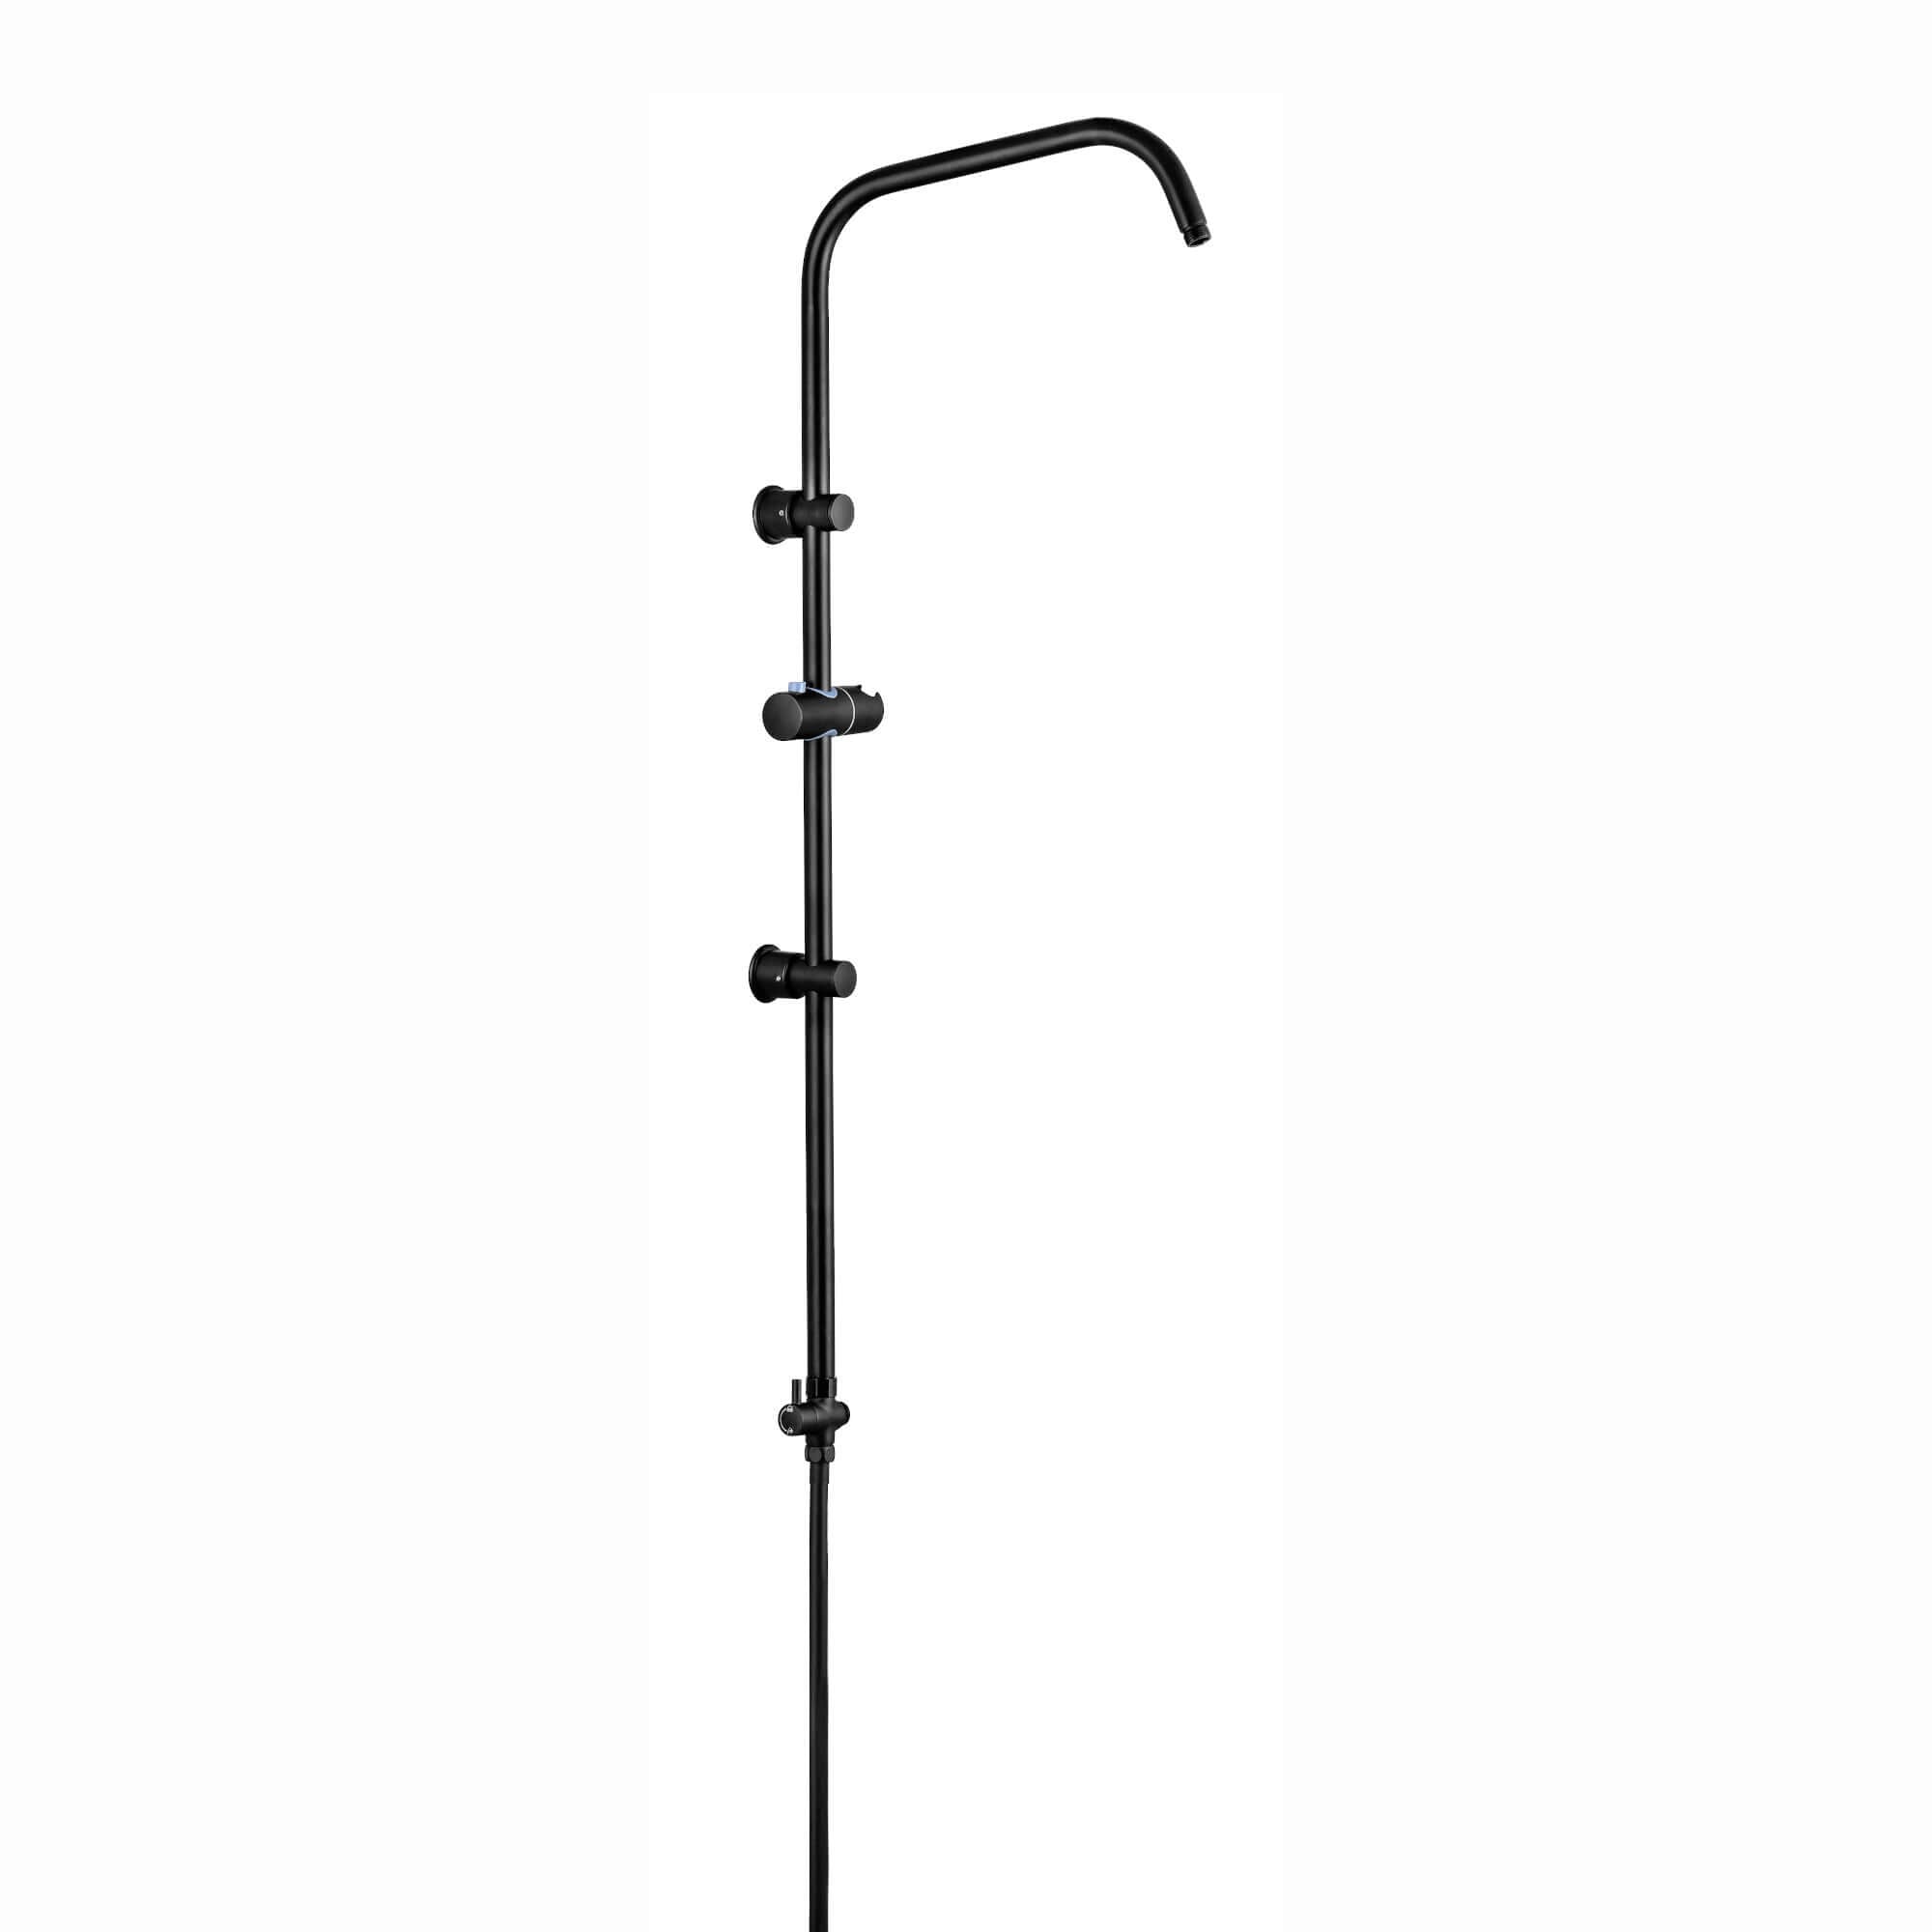 Carre shower adjustable rigid riser rail angled with 2 wall brackets, handset bracket, diverter, connecting hose - black - Showers